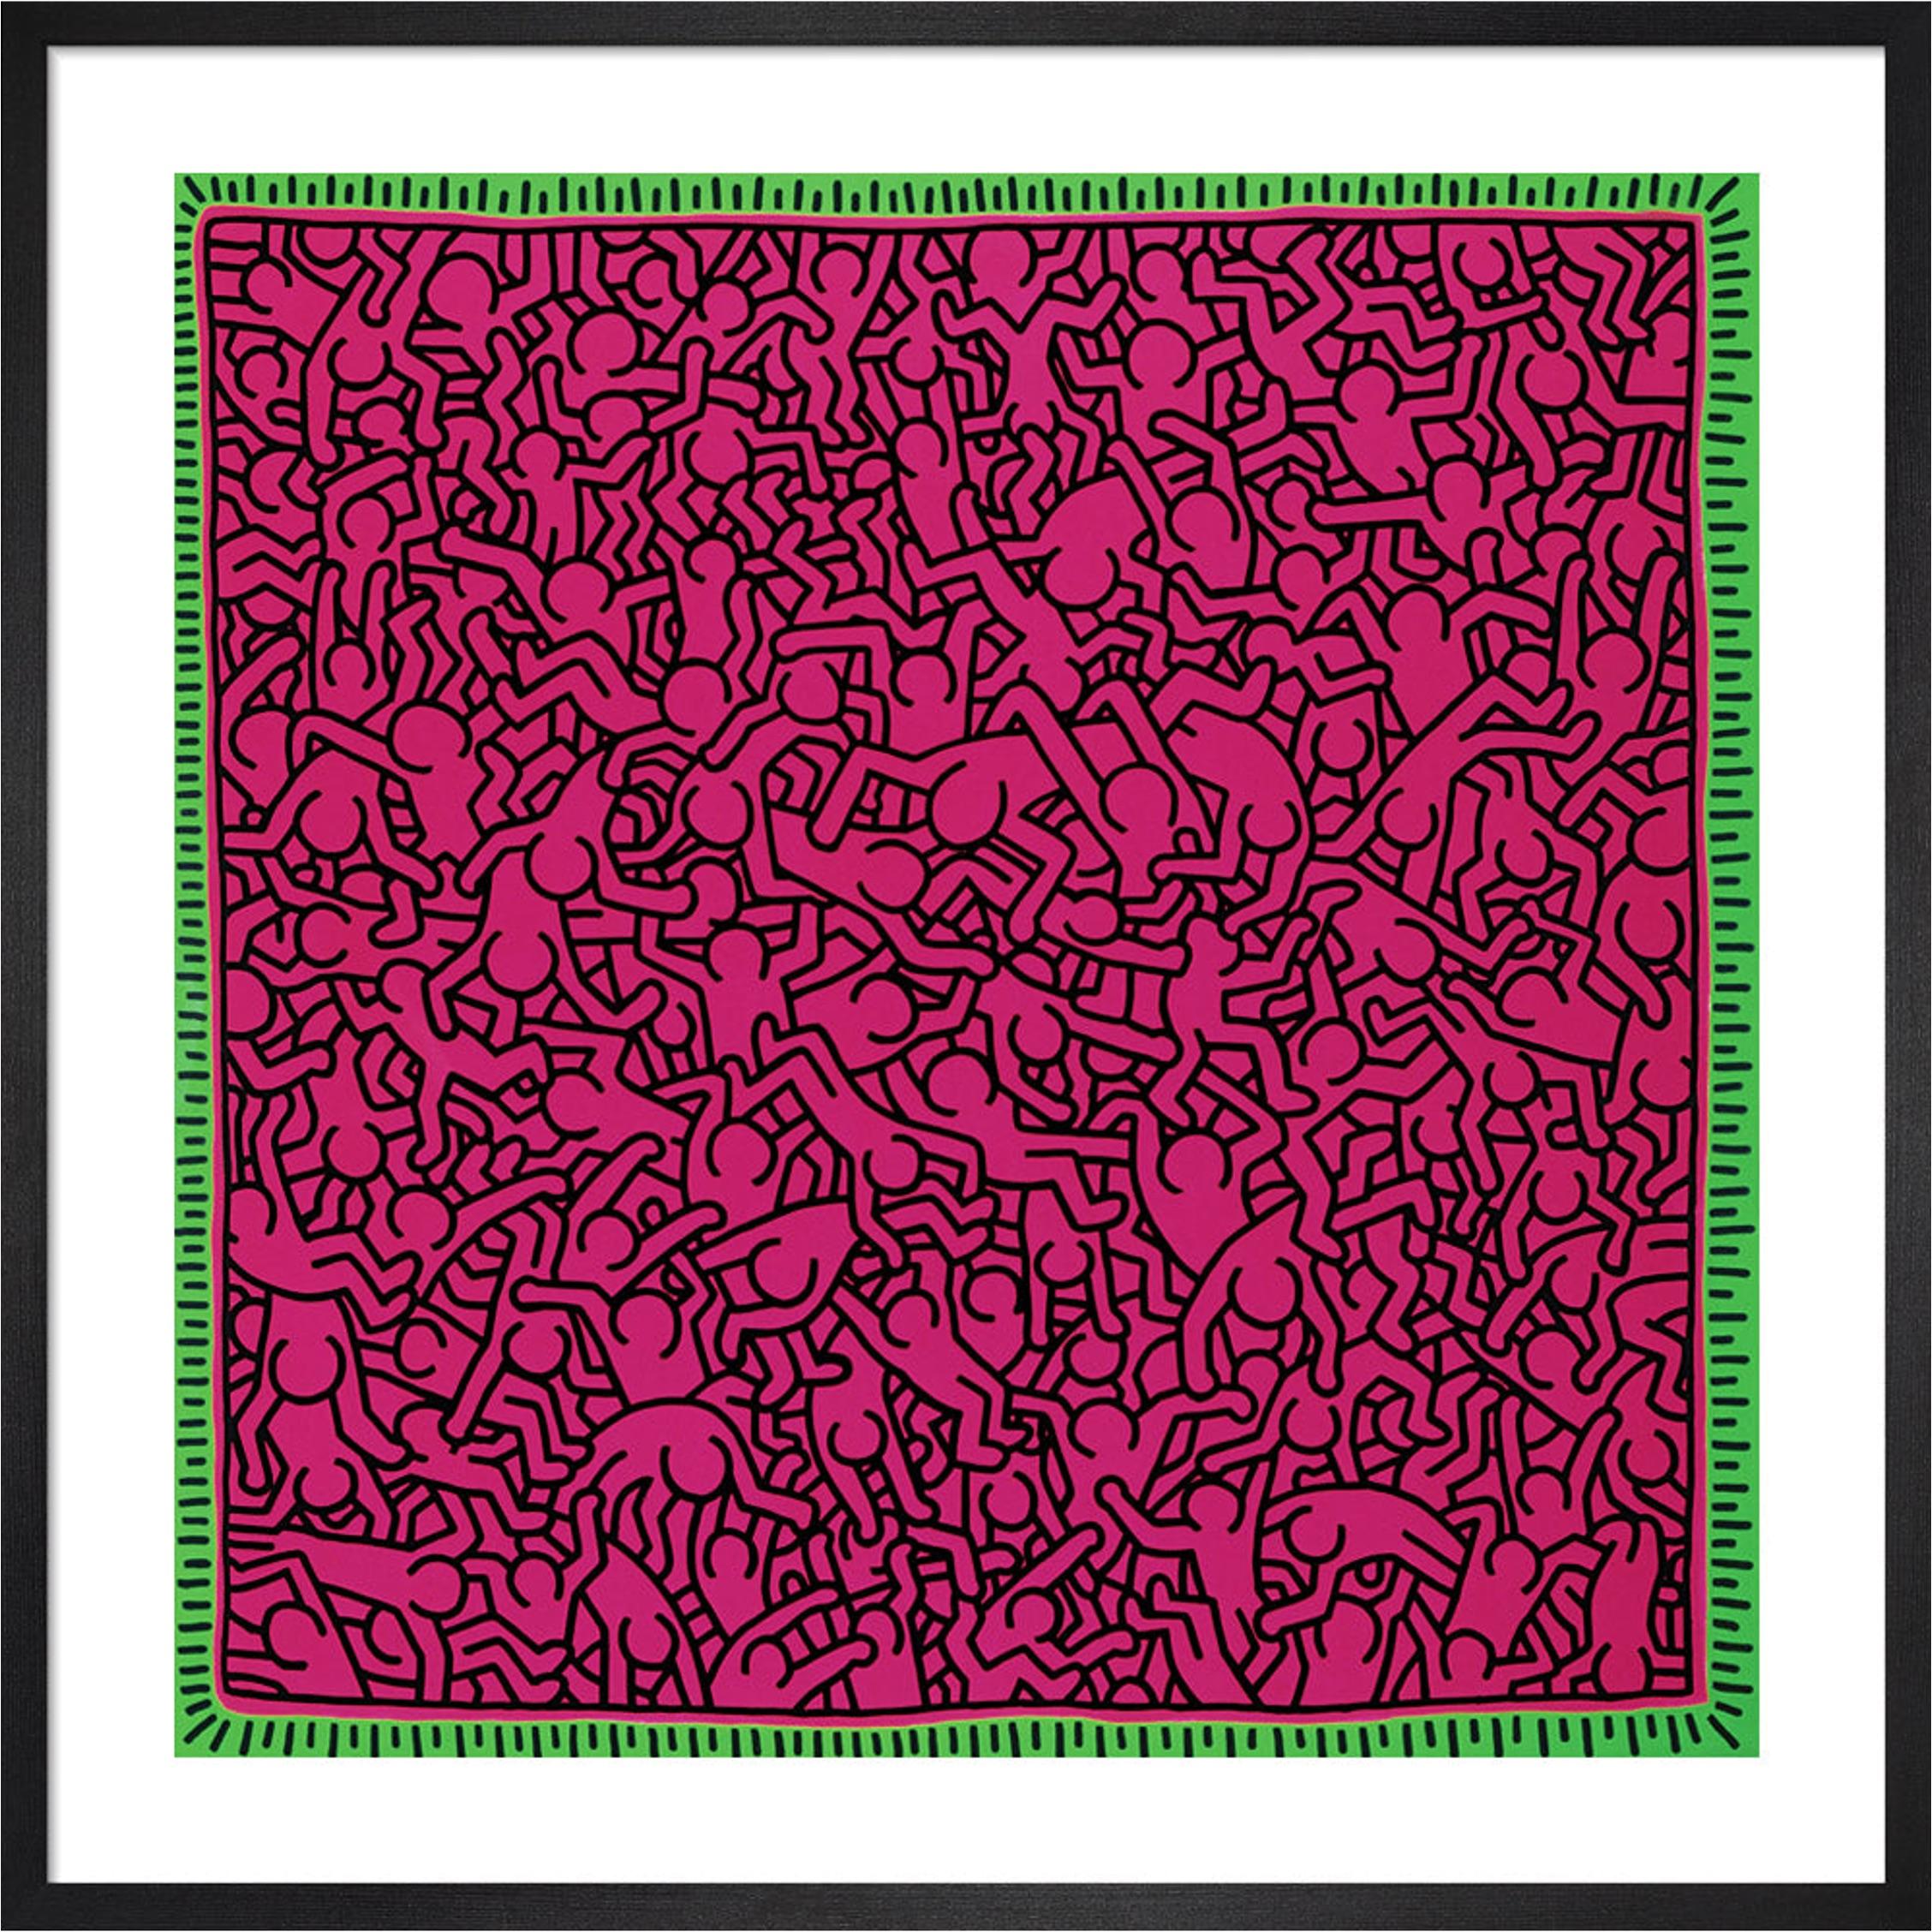 Cette impression présente une reproduction de Untitled (1984) de Keith Haring, un artiste mondialement connu. Figure emblématique de la scène artistique de l'East Village à New York dans les années 1980, Keith Haring a développé un vocabulaire